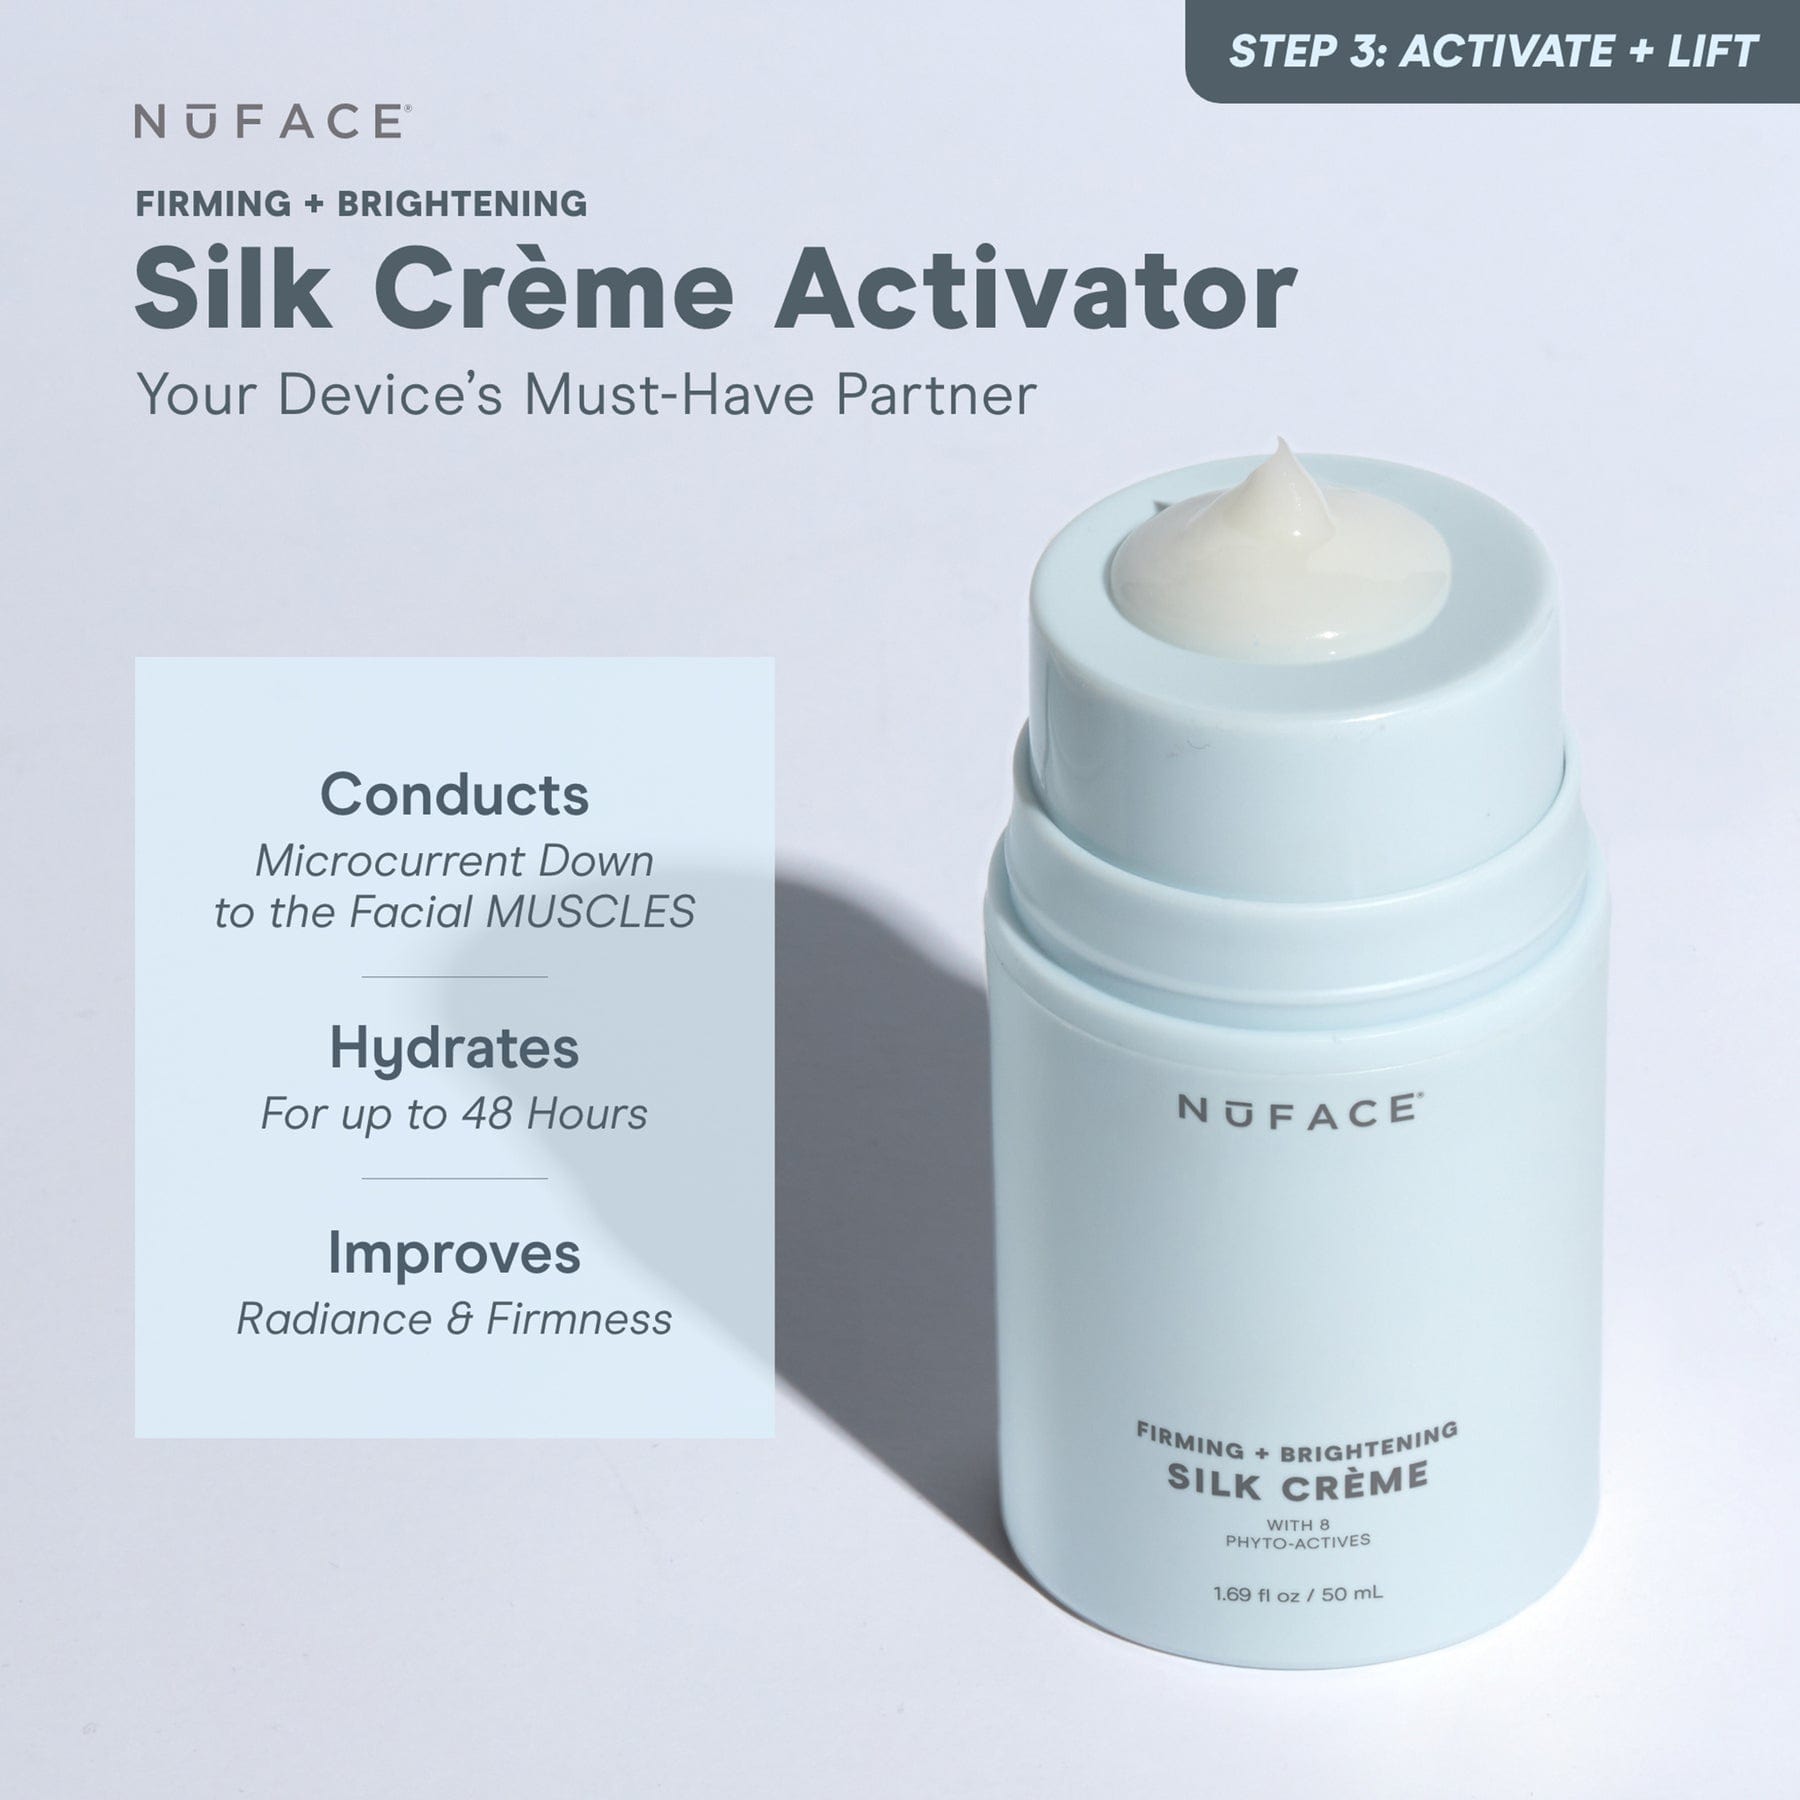 Silk Crème Activator - Firming & Brightening